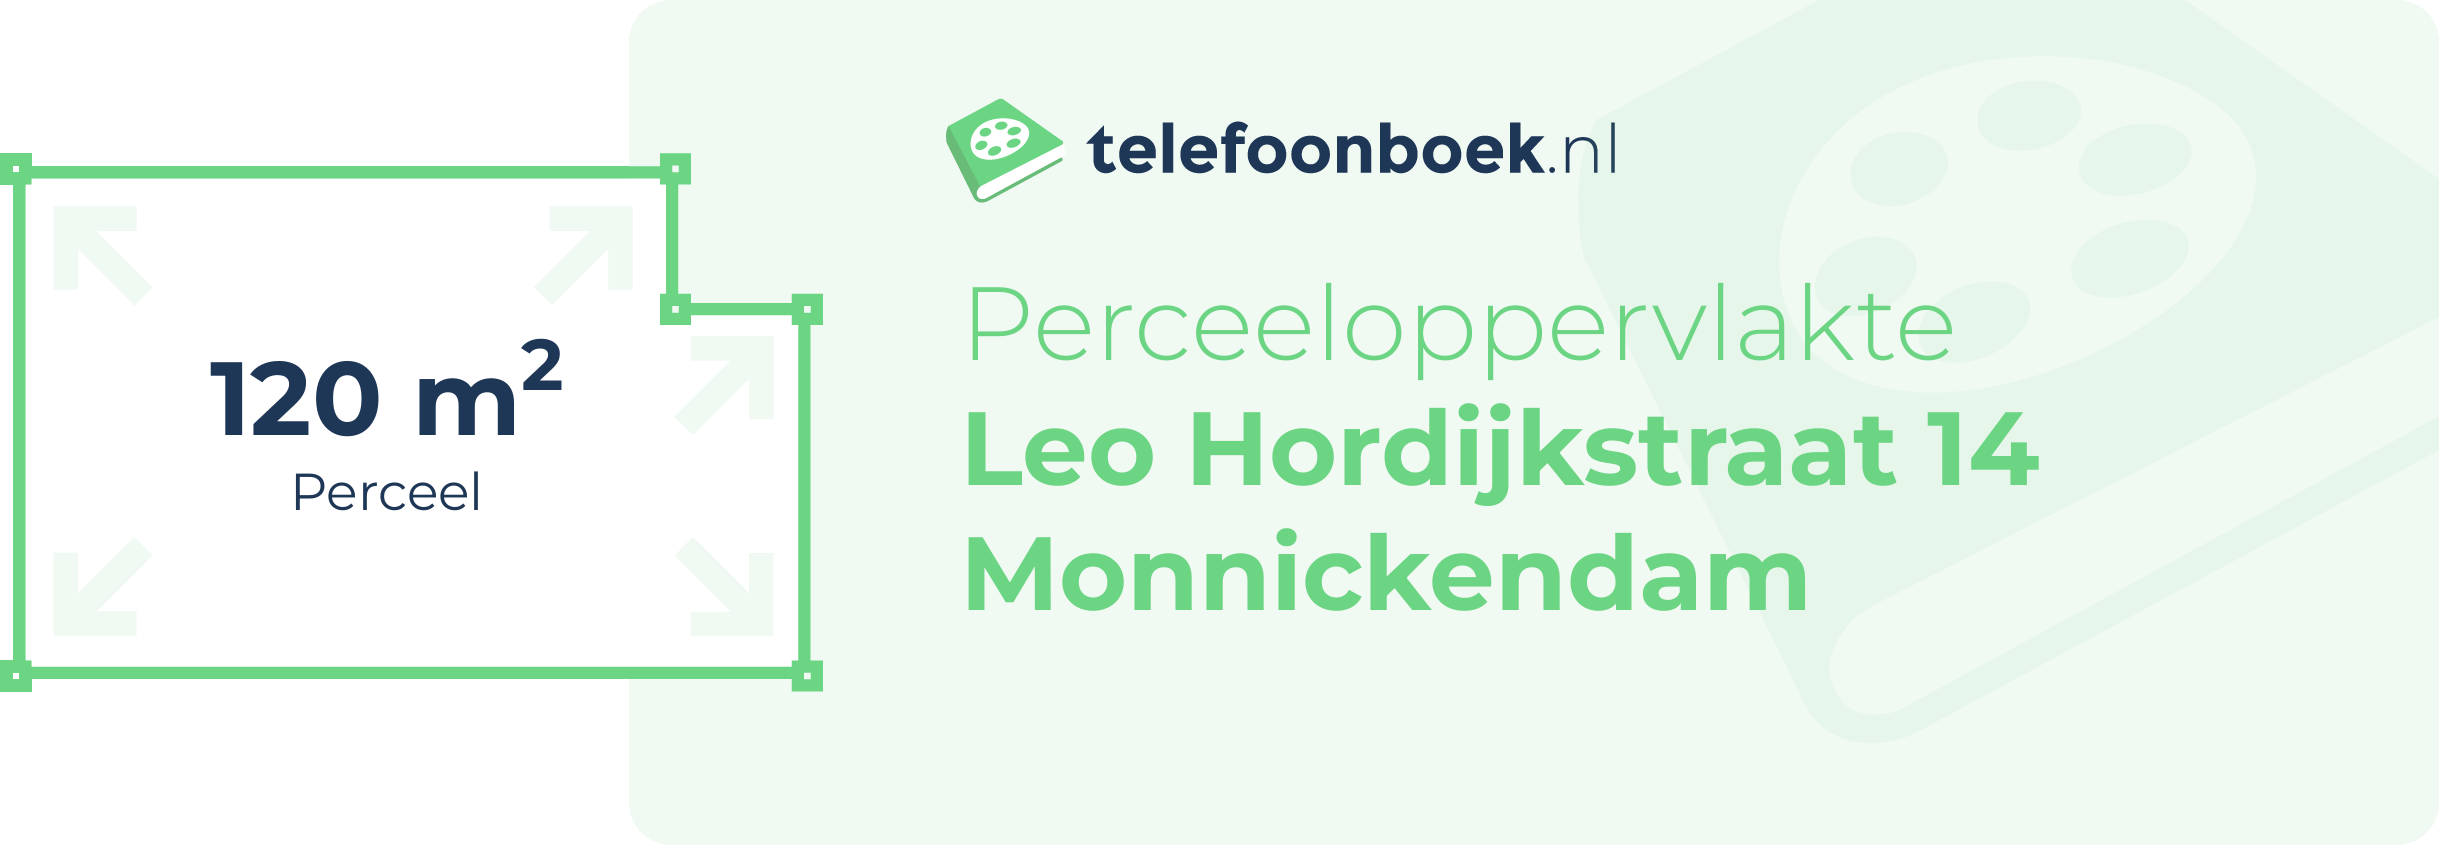 Perceeloppervlakte Leo Hordijkstraat 14 Monnickendam